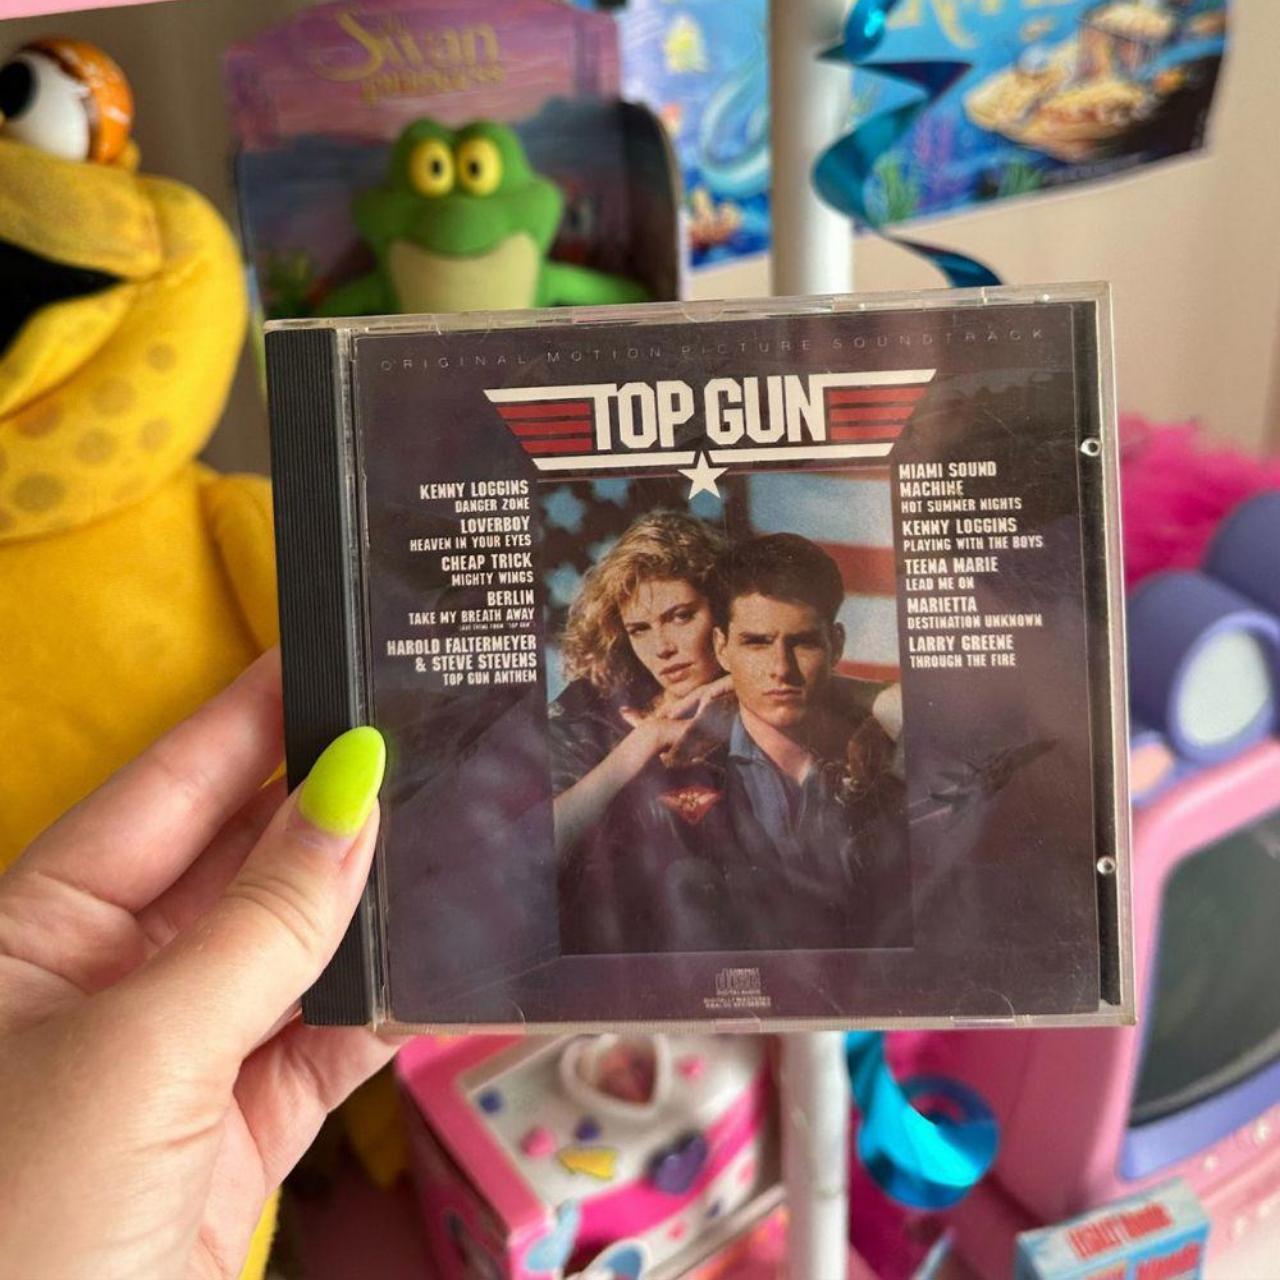  Top Gun: CDs & Vinyl